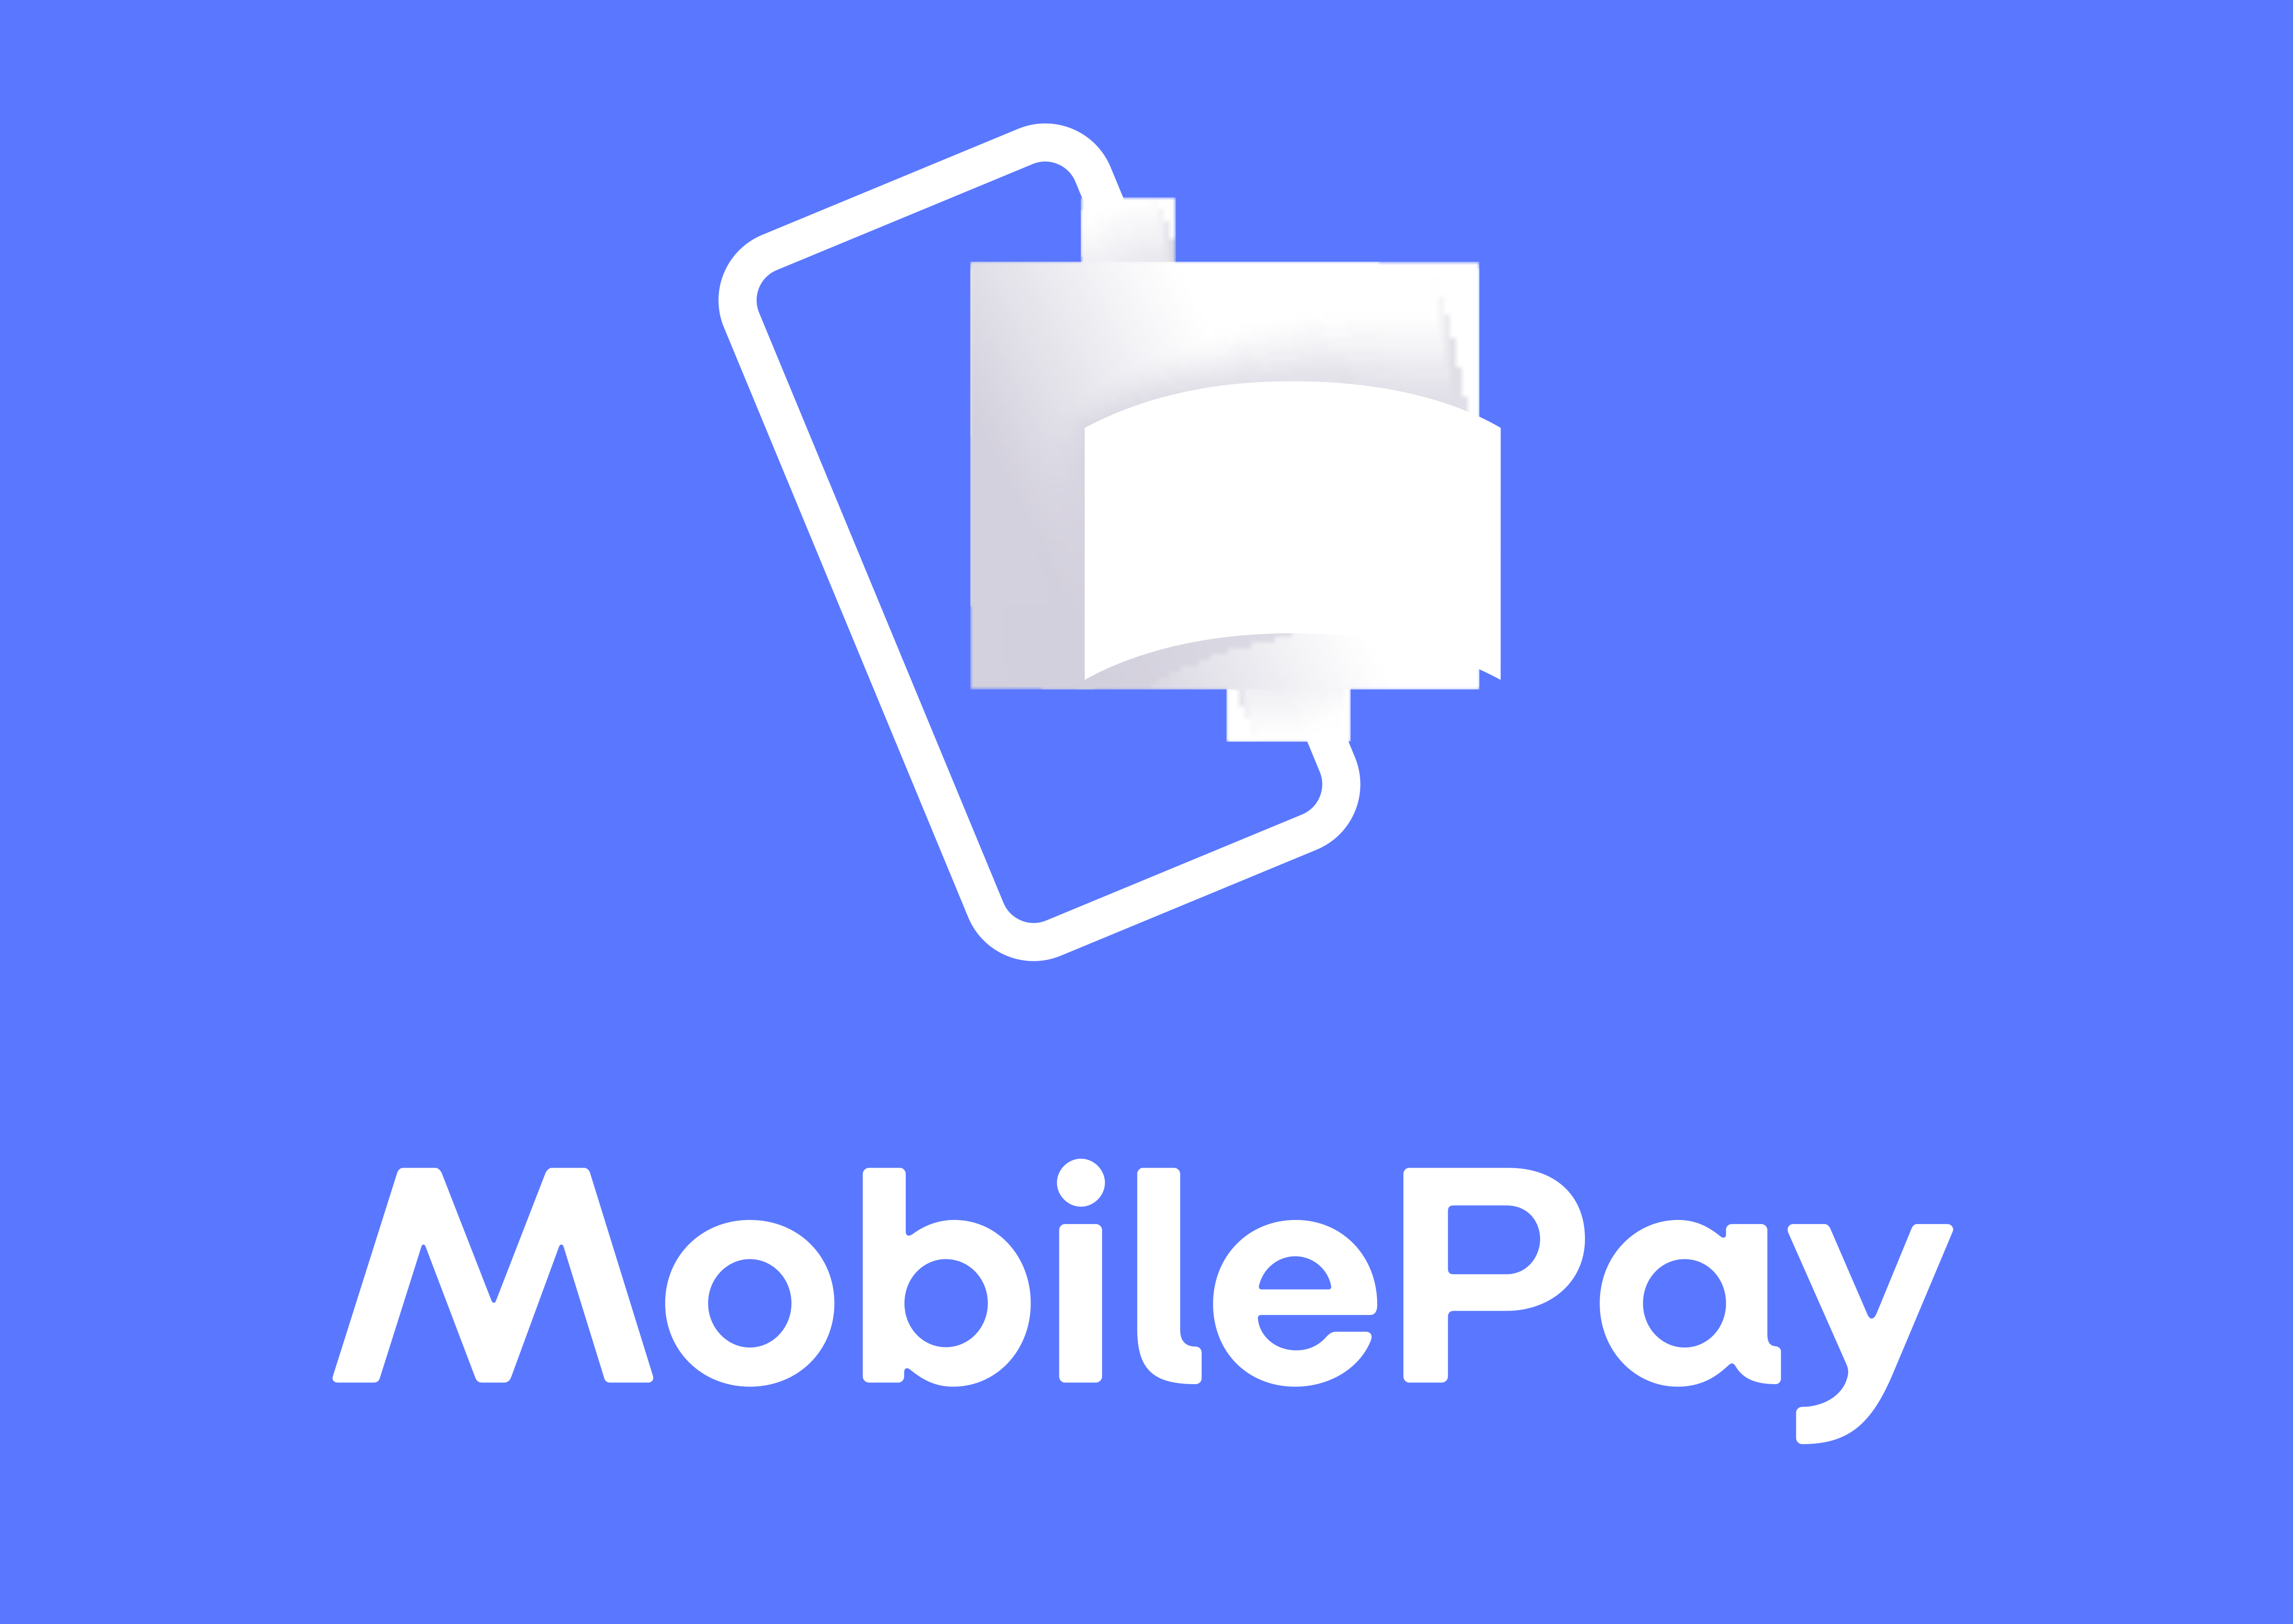 MobilePay – Logos